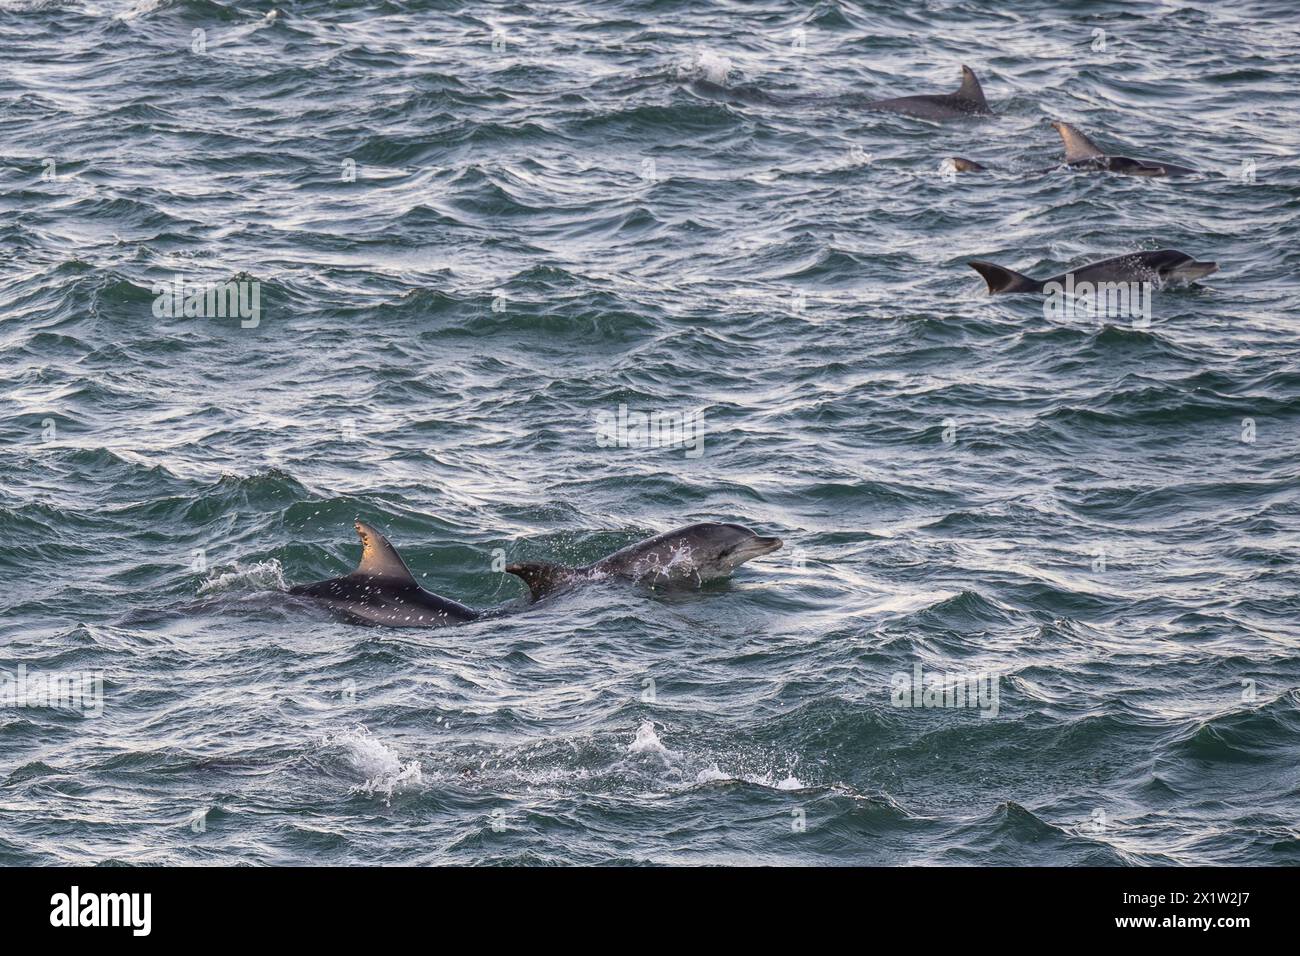 Dauphins, dauphins à bec large, Baie, Port Elizabeth, Afrique du Sud Banque D'Images